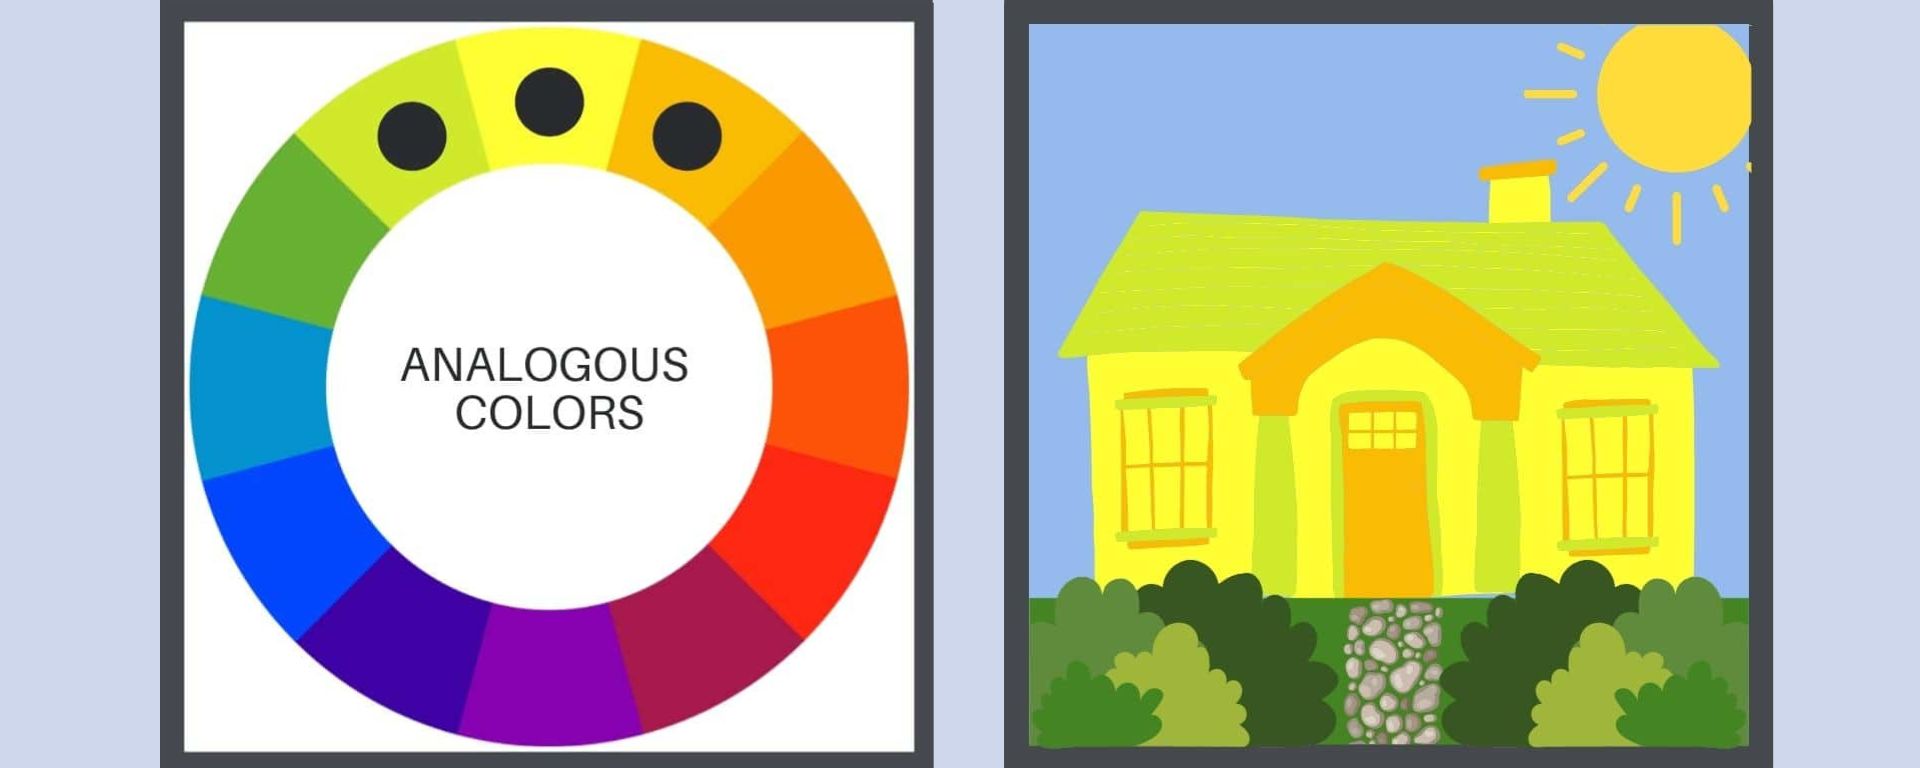 bungalow-colors-harmony-analogous